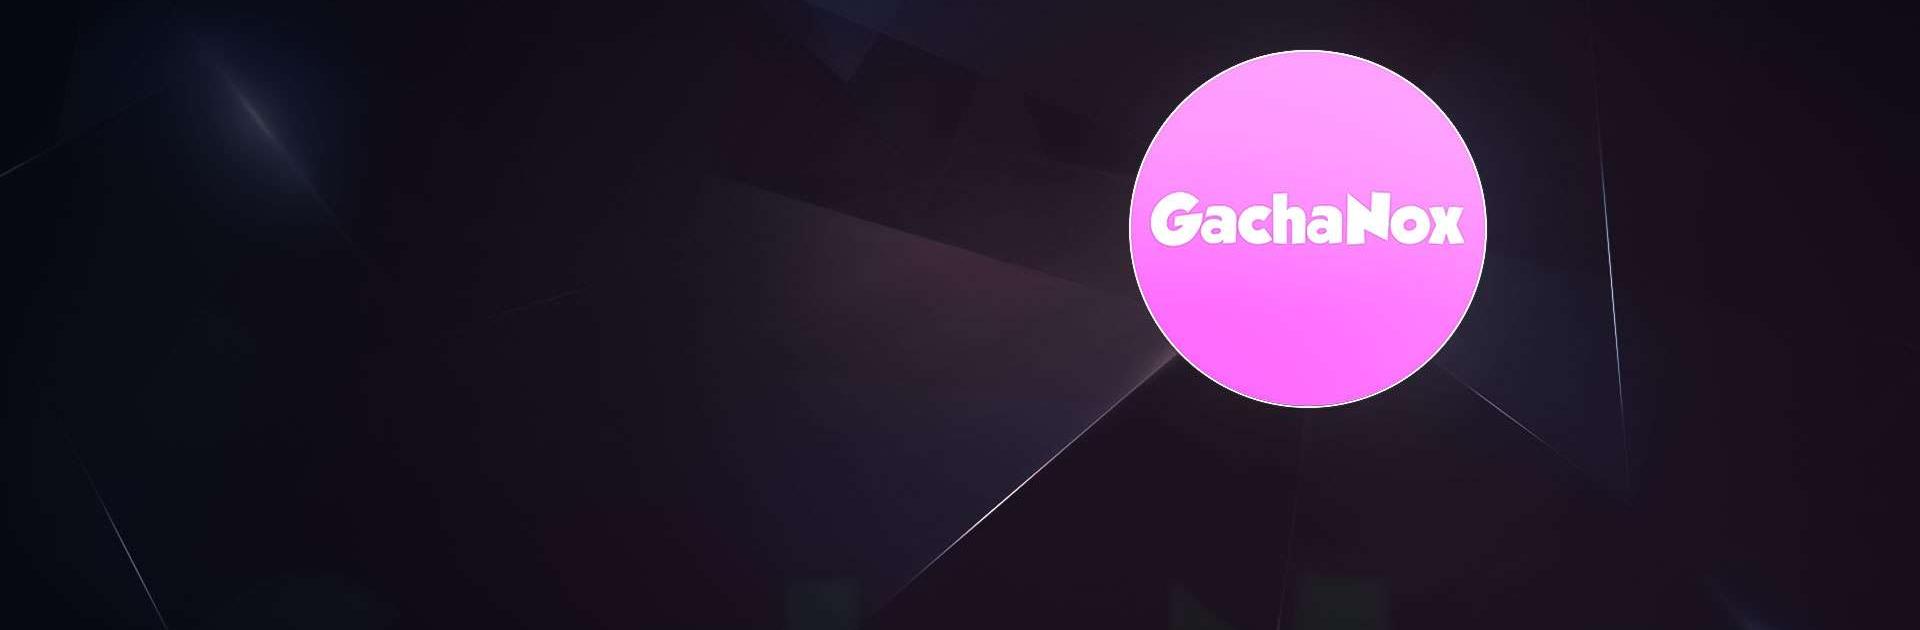 Mod de ajuda Gacha Nox versão móvel andróide iOS apk baixar